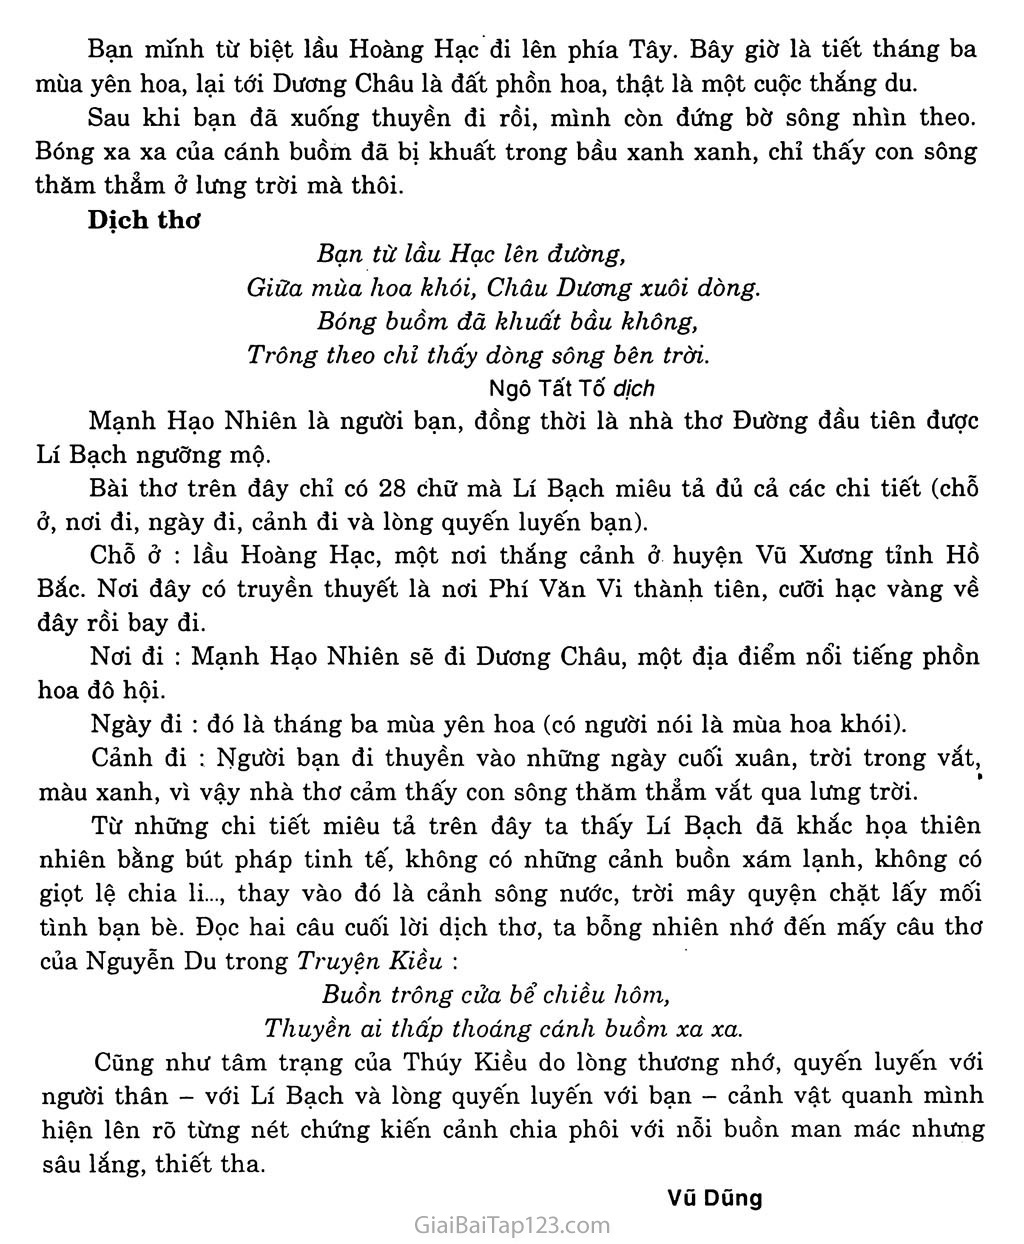 Tại lầu Hoàng Hạc tiễn Mạnh Hạo Nhiên đi Quảng Lăng (Hoàng Hạc lâu tống Mạnh Hạo Nhiên chi Quảng Lăng) trang 3